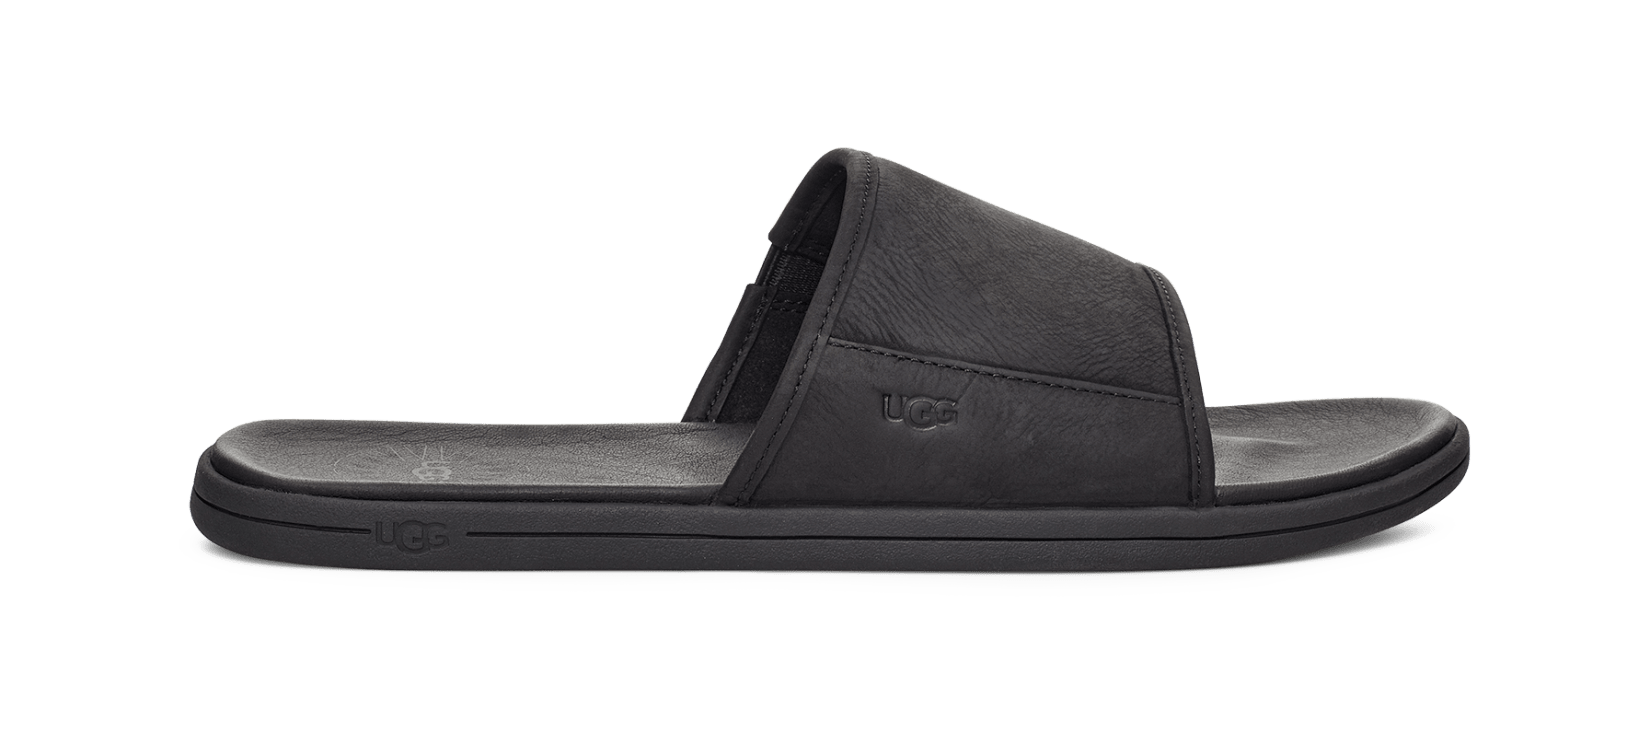 Ugg Leather Slides Best Sale | bellvalefarms.com